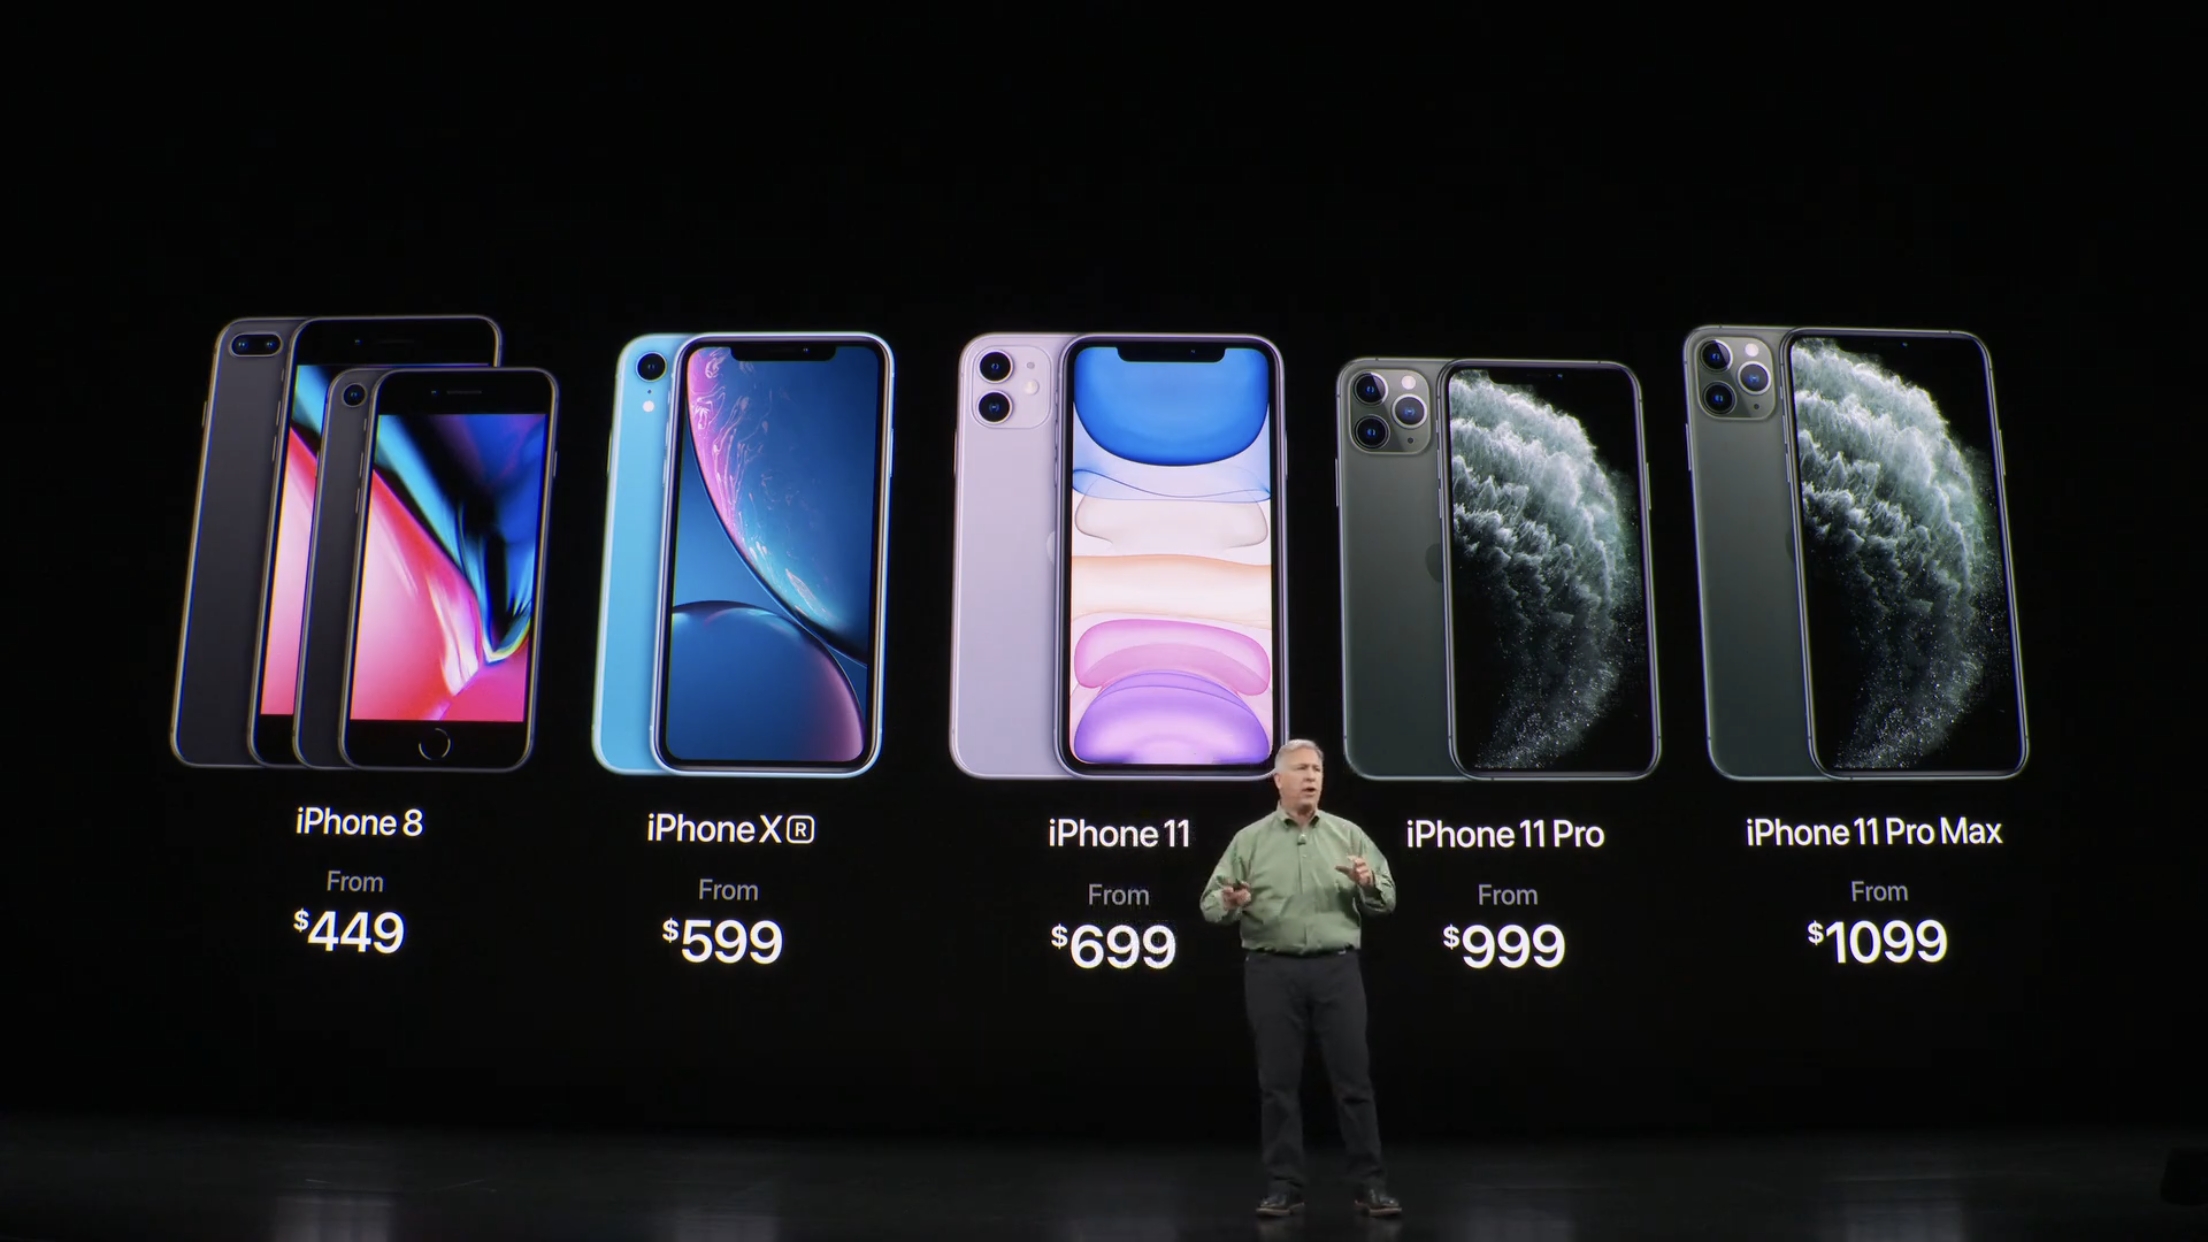 alt="iPhone 11 Pro ราคา"